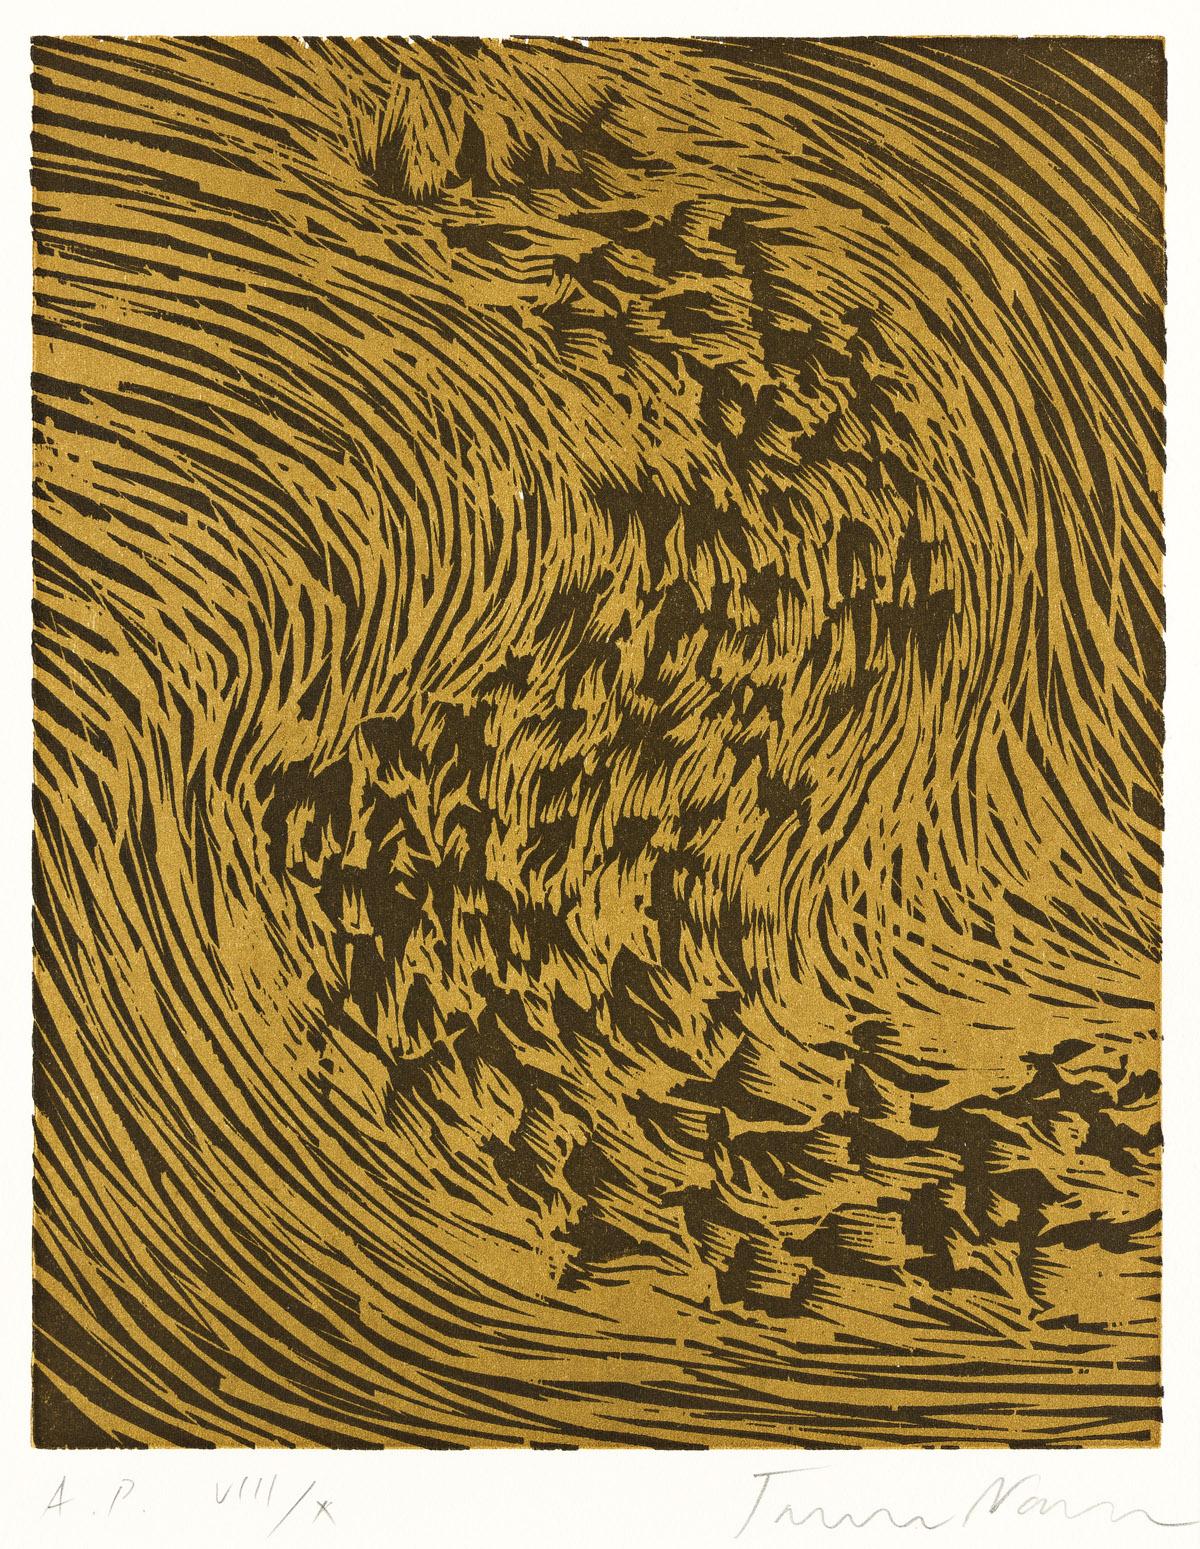 James Nares Abstract Print - Starling